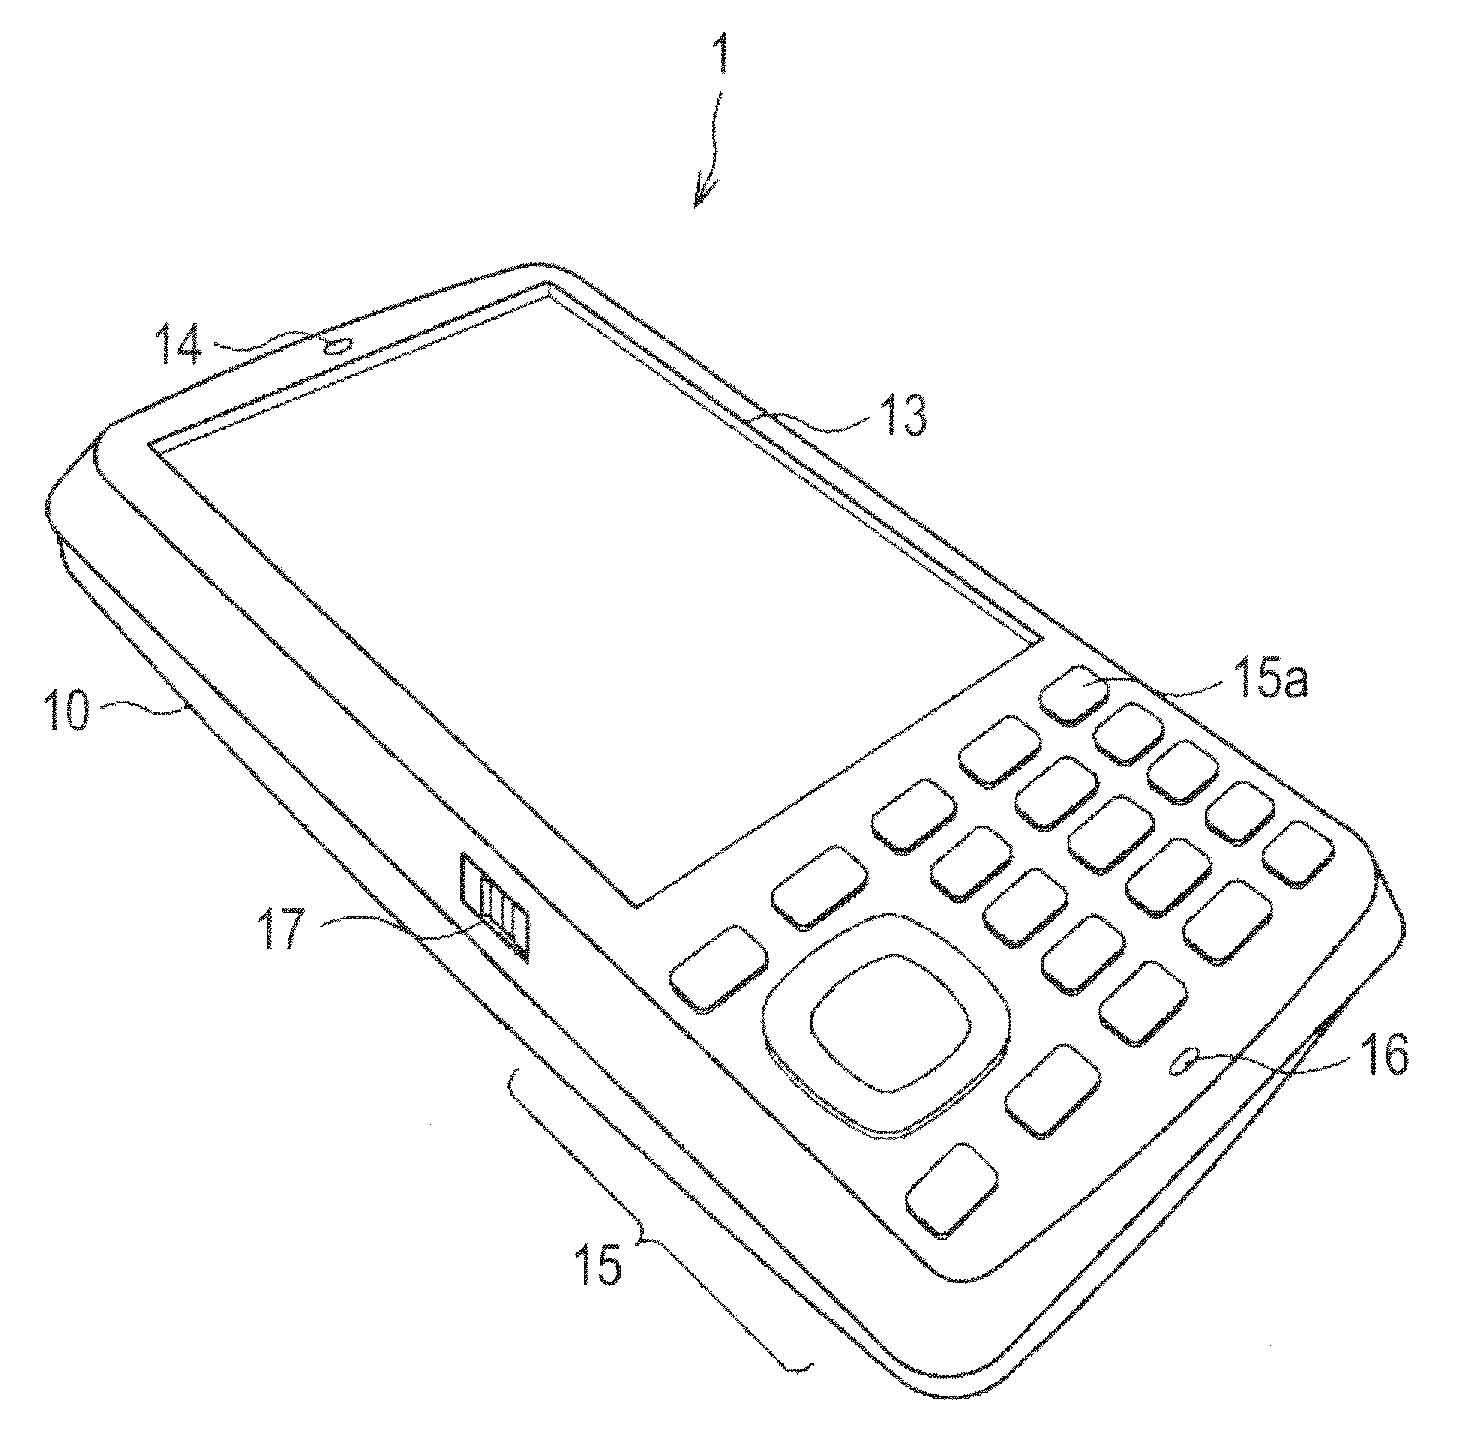 Mobile apparatus